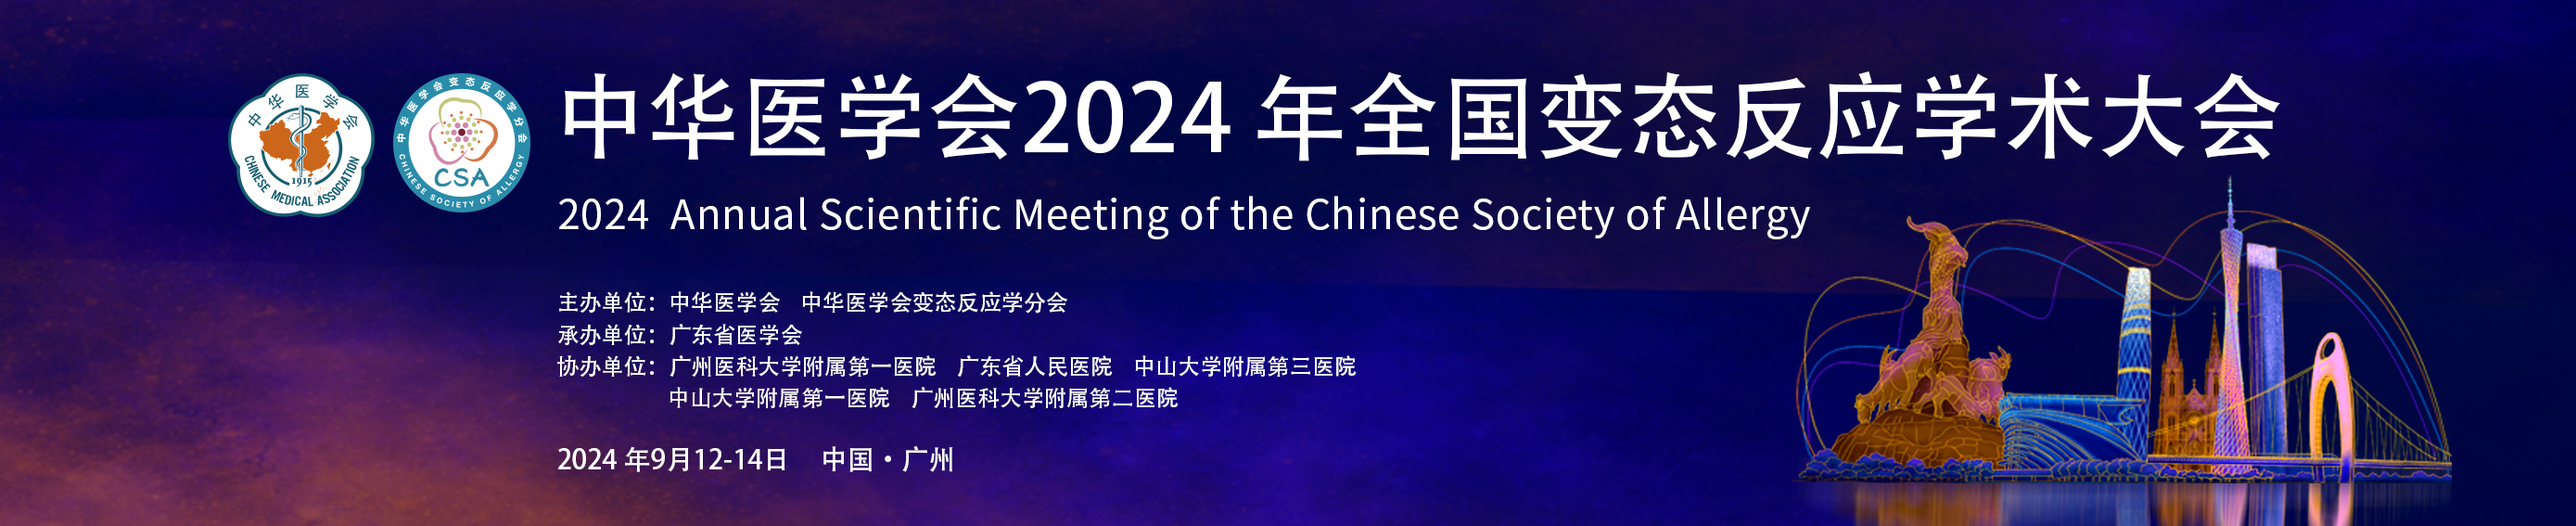 中华医学会2024年变态反应学学术会议